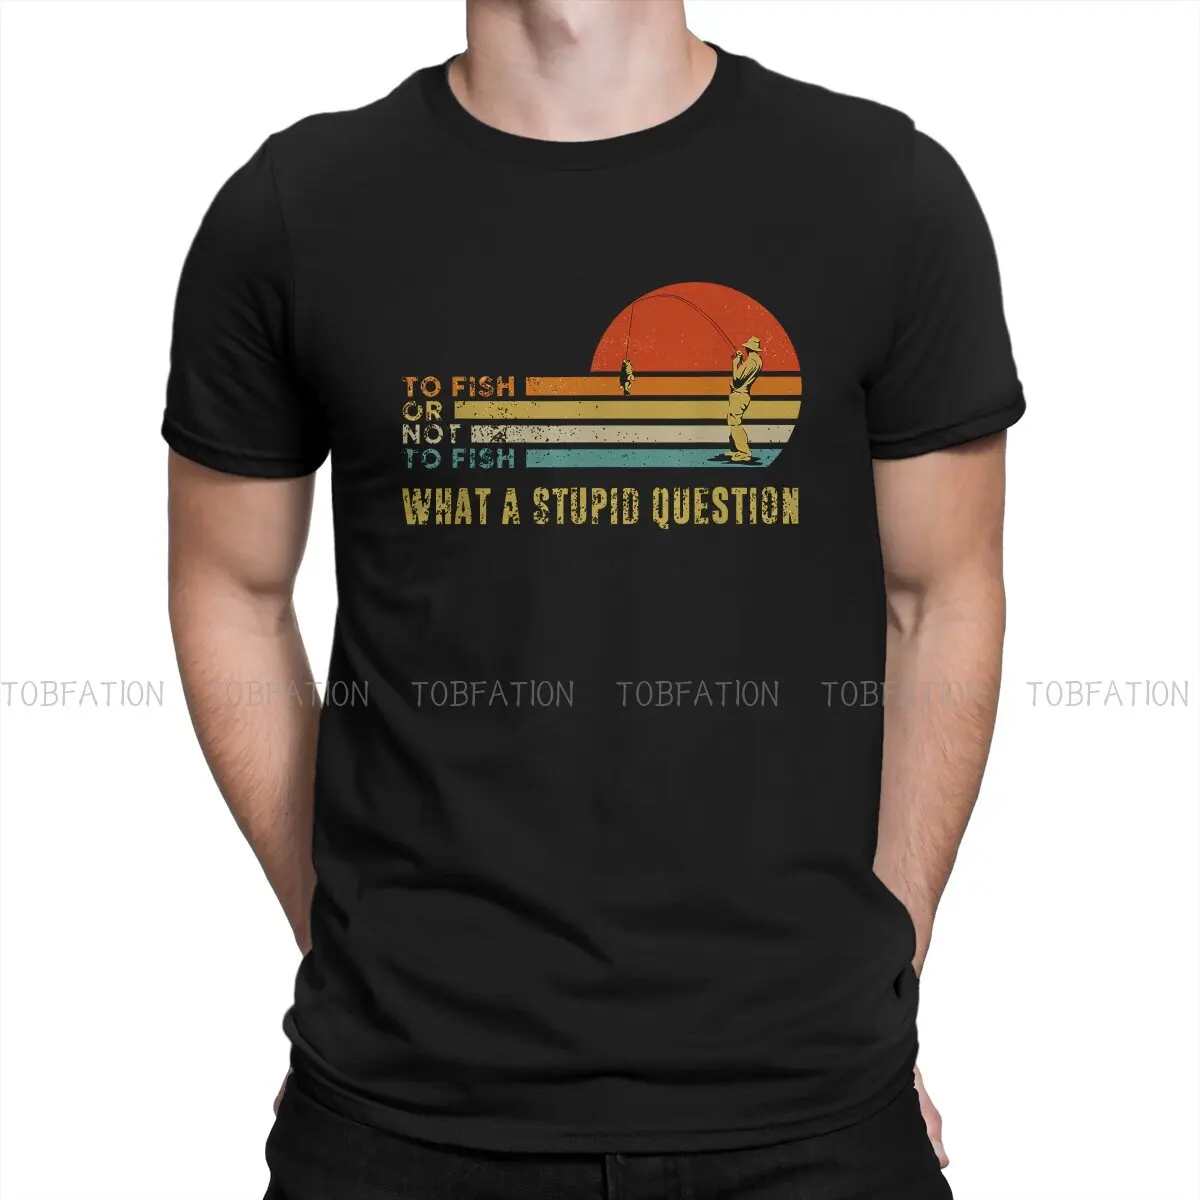 

Мужская футболка для рыбалки, футболка с надписью «To Fish Or Not To Fish What A глупый вопрос», индивидуальная футболка, хипстерские толстовки из 100% хлопка